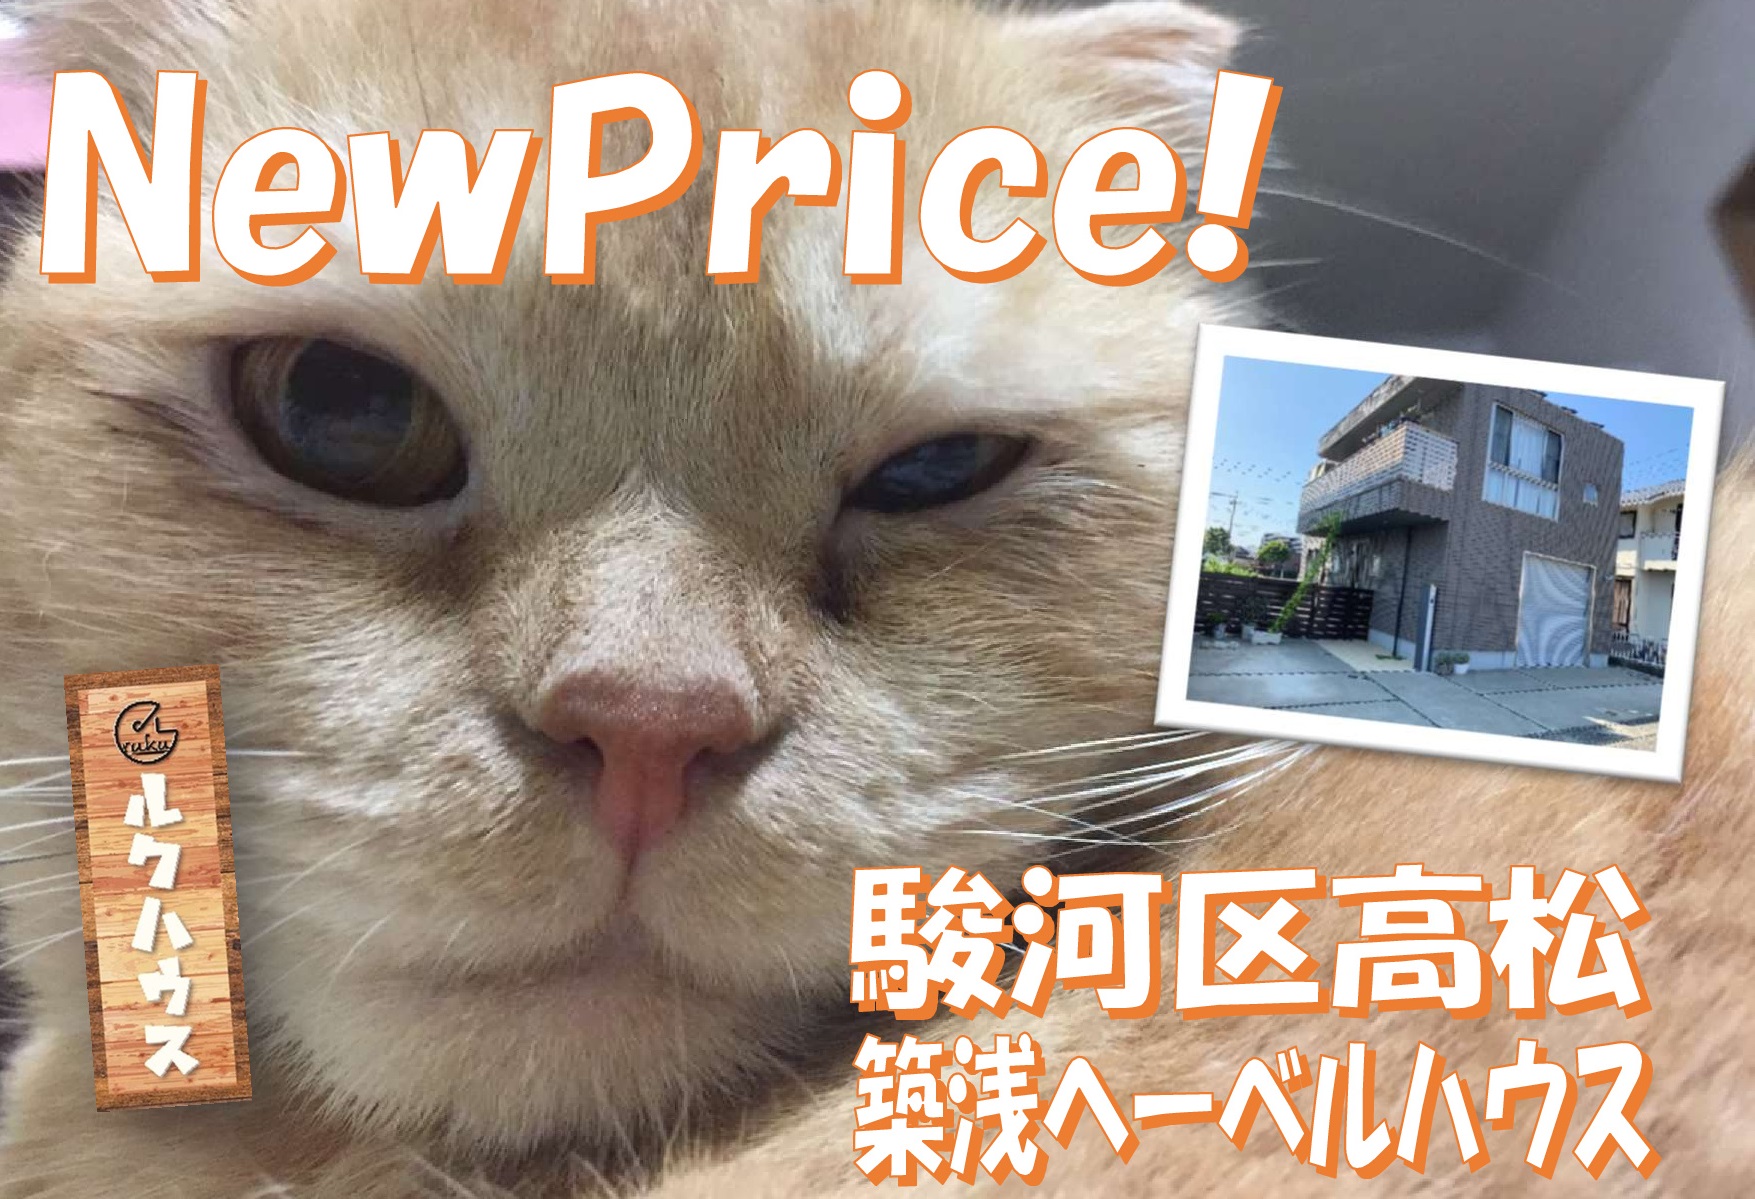 ■NewPriceは3290万円■駿河区高松築浅へーベルハウス